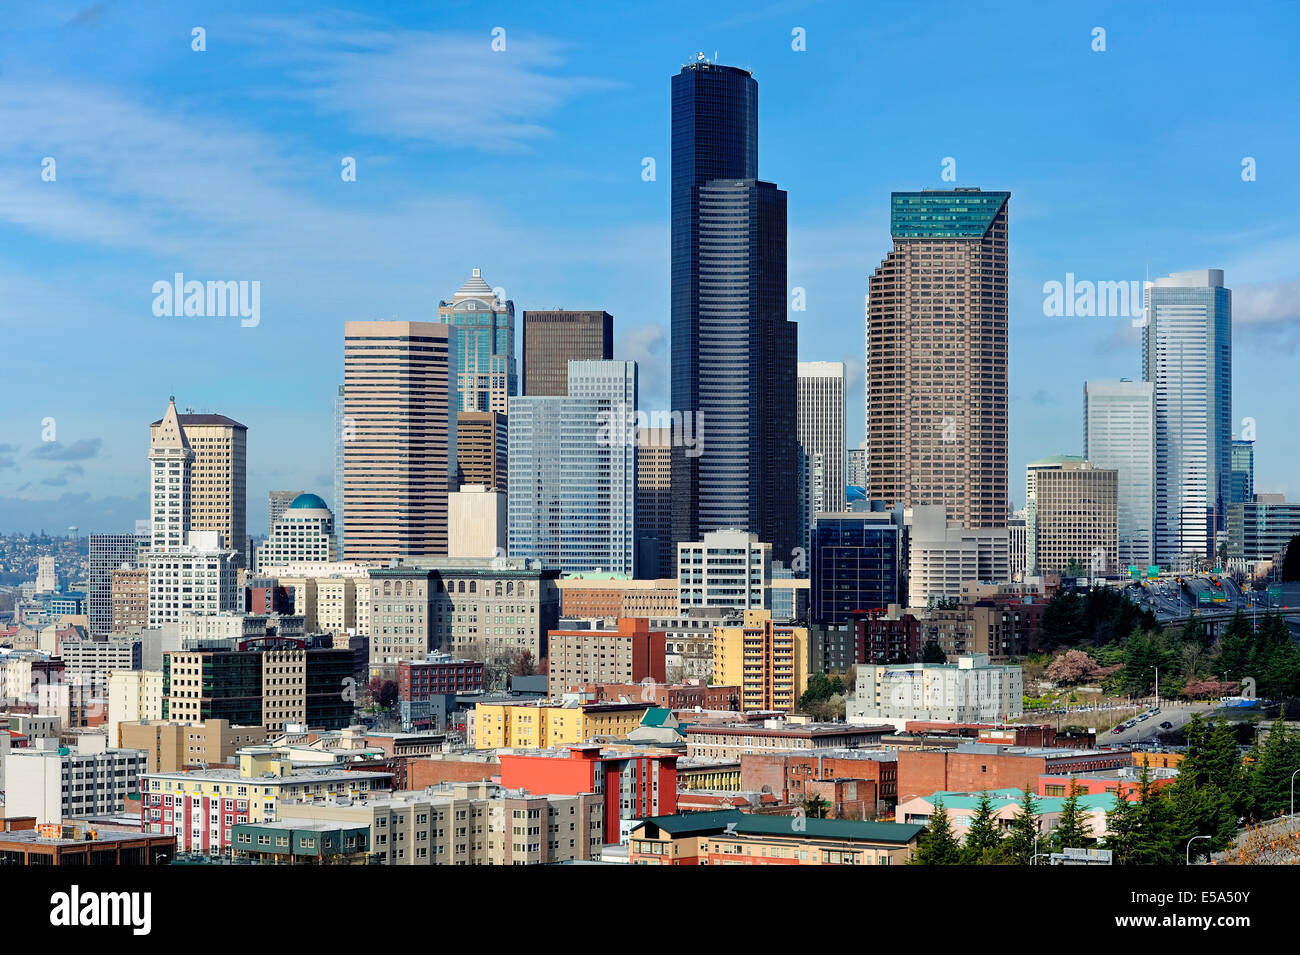 Seattle city skyline against blue sky, Seattle, Washington, United States Stock Photo